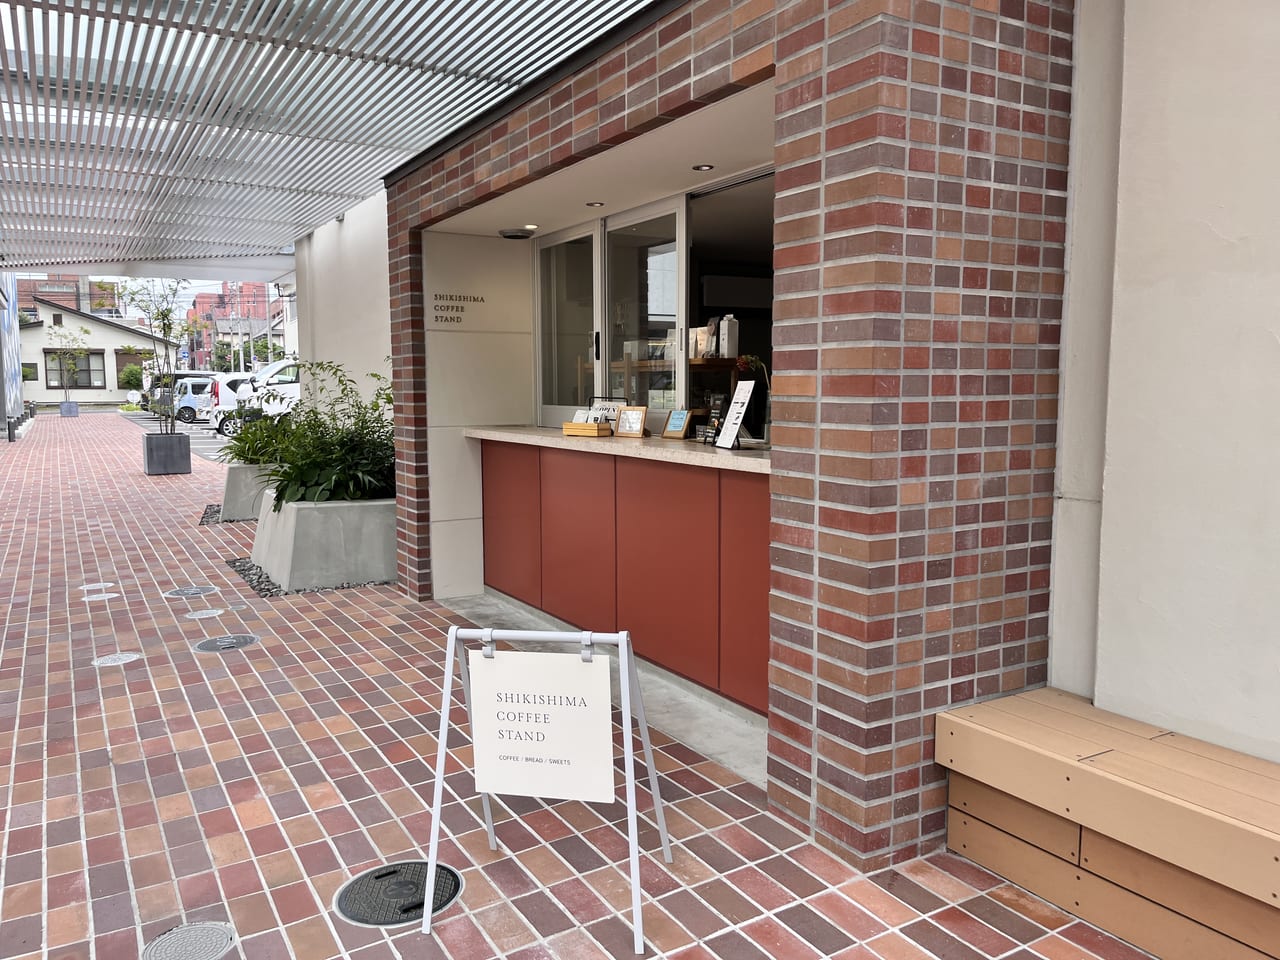 「SHIKISHIMA COFFEE STAND」の外の注文口